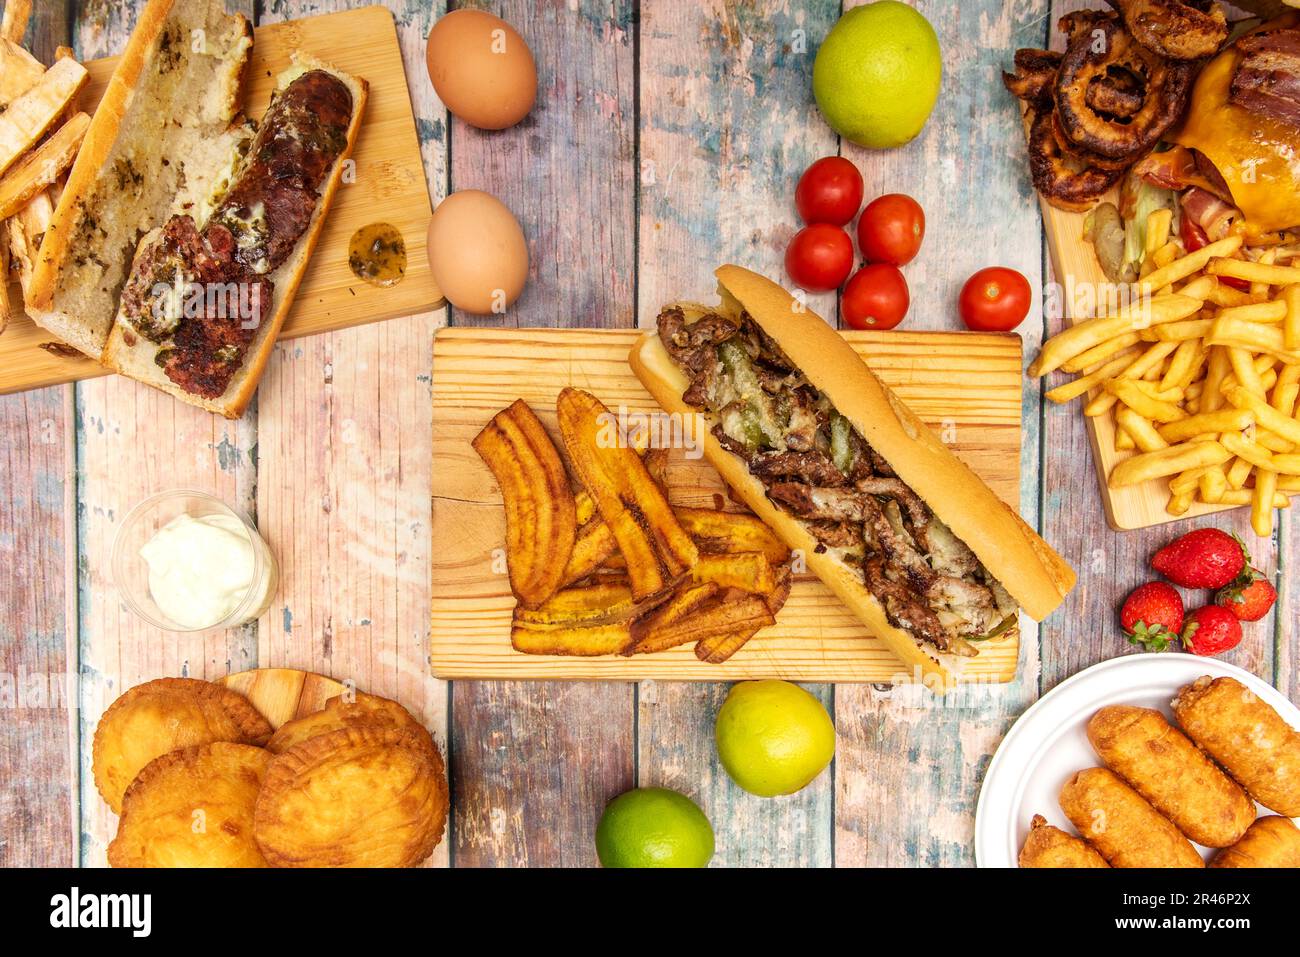 ensemble de plats de restauration rapide latins avec un sandwich au bœuf avec des morceaux de plantain frits, des fruits, des légumes et des empanadas Banque D'Images